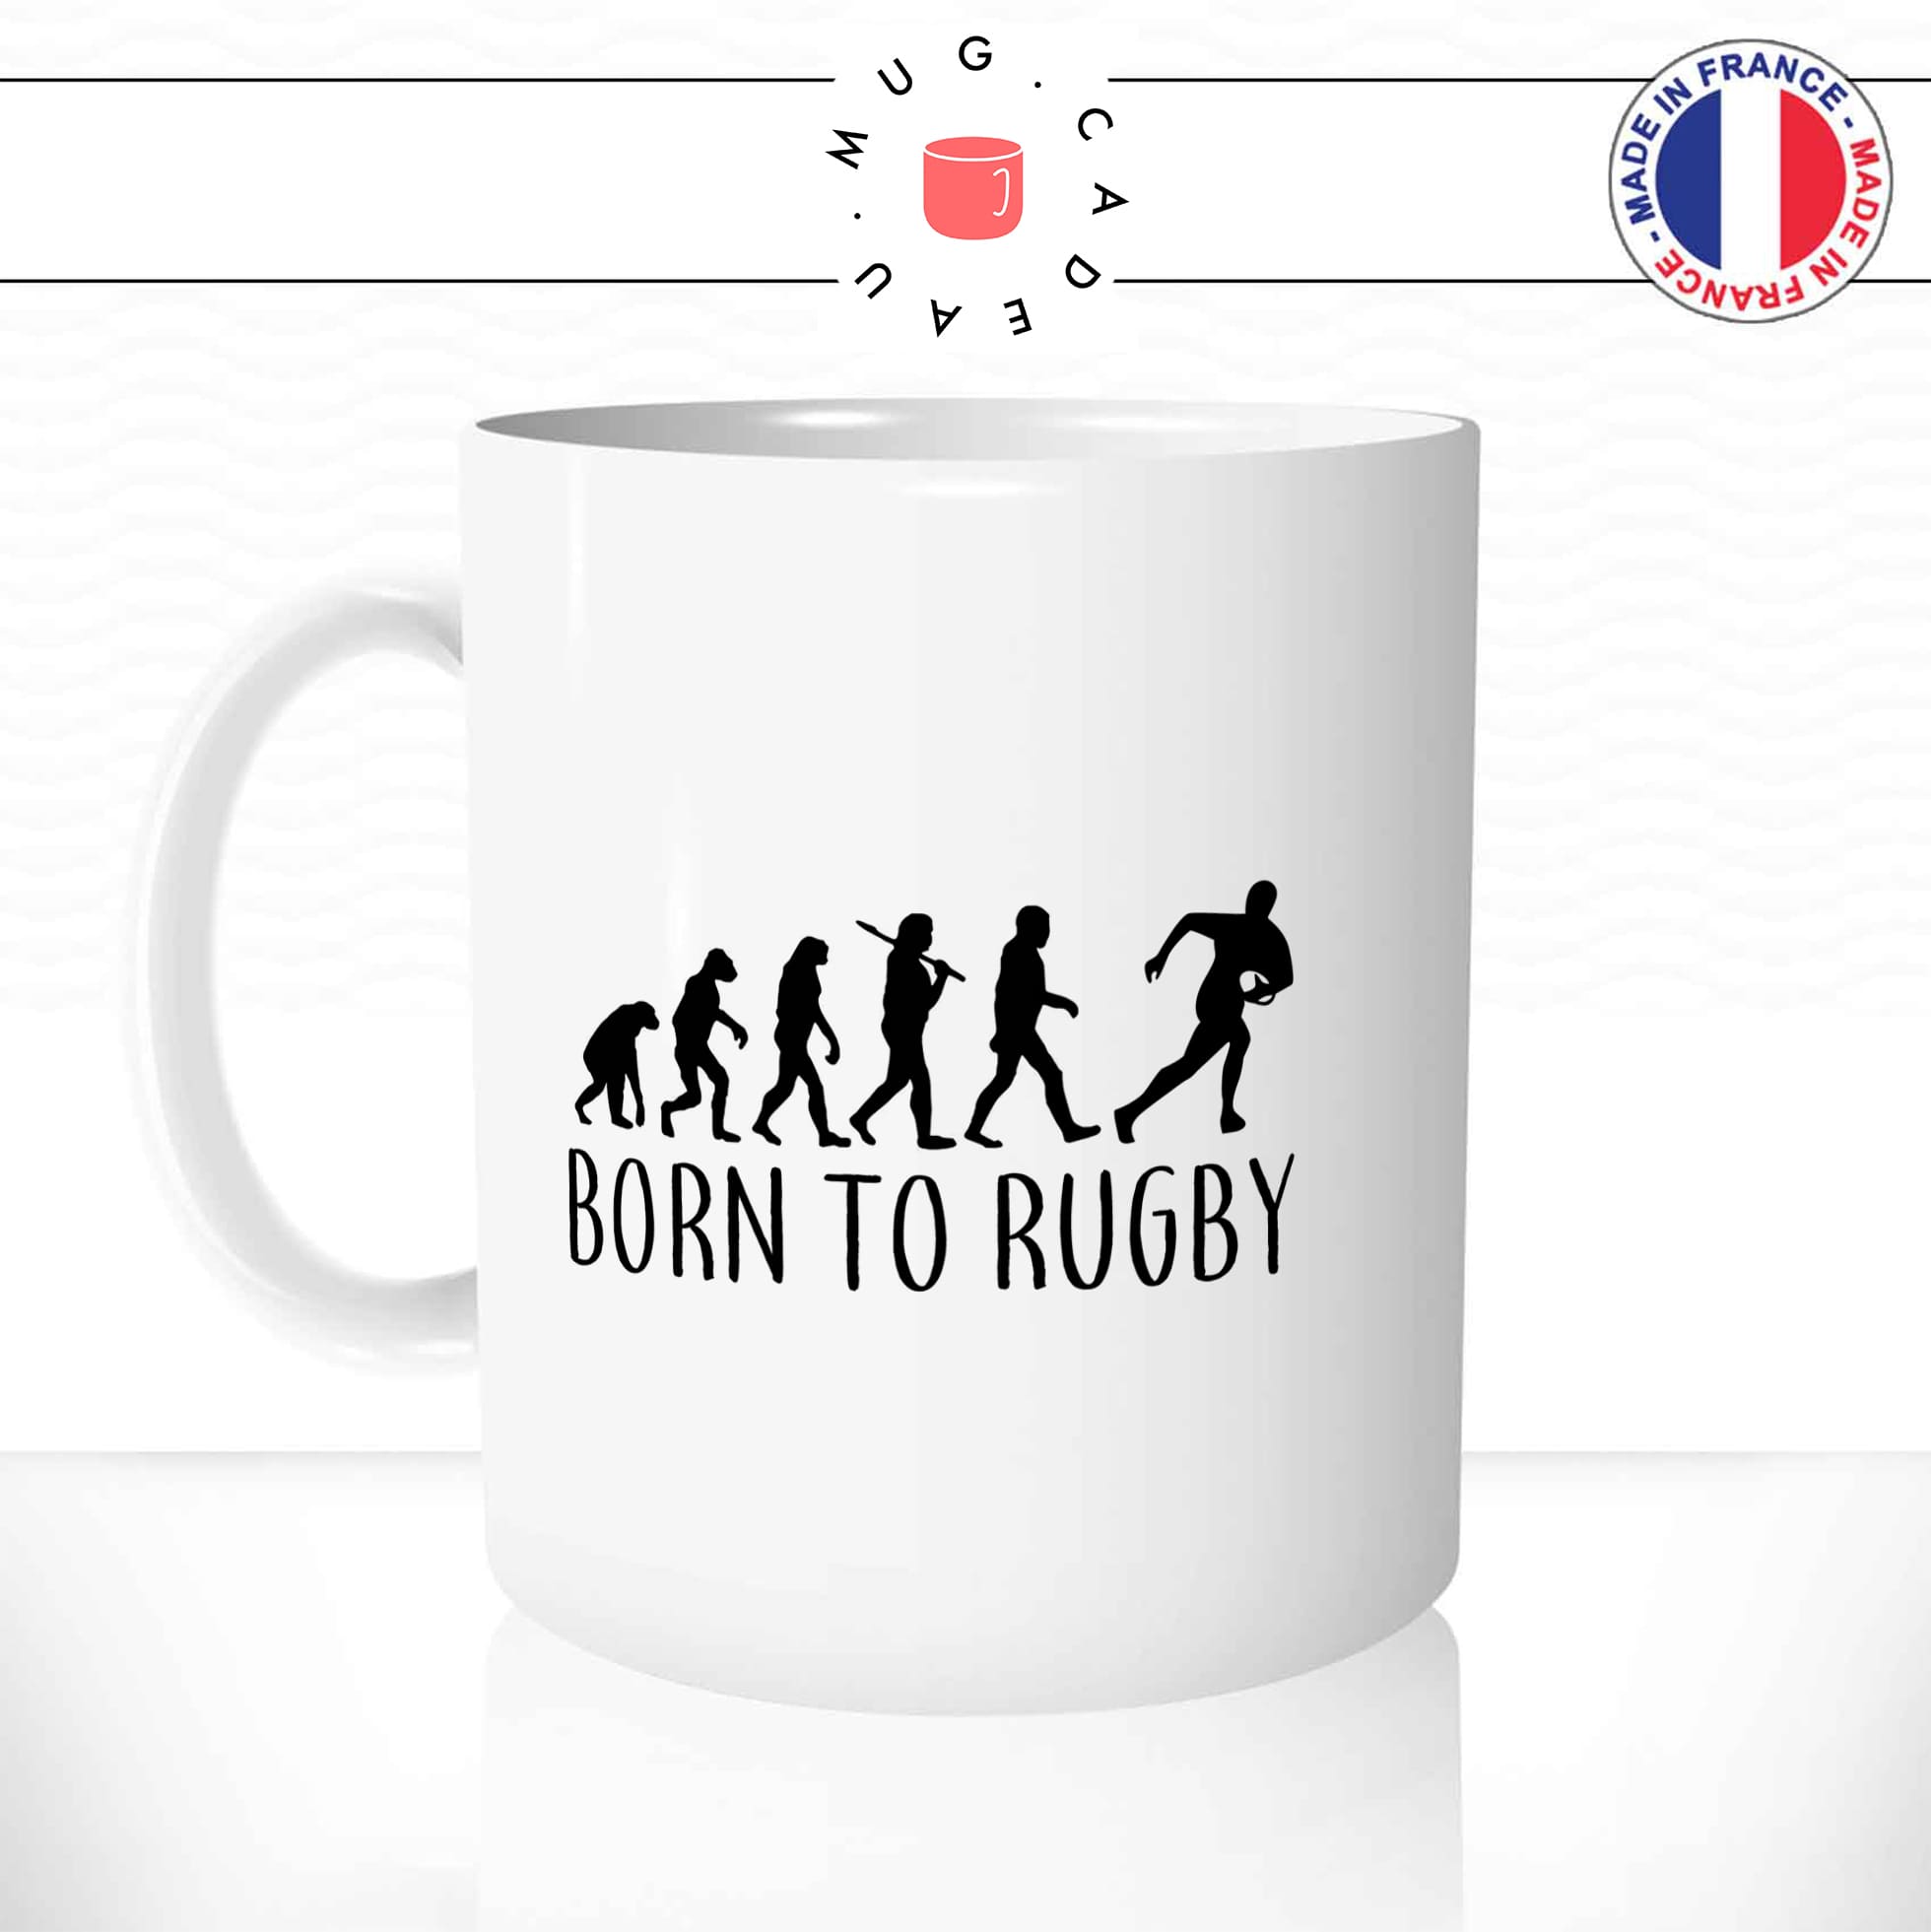 mug-tasse-born-to-rugby-sport-coupe-viril-ballon-oval-passion-humour-evolution-de-l'homme-fun-café-thé-idée-cadeau-originale-personnalisée